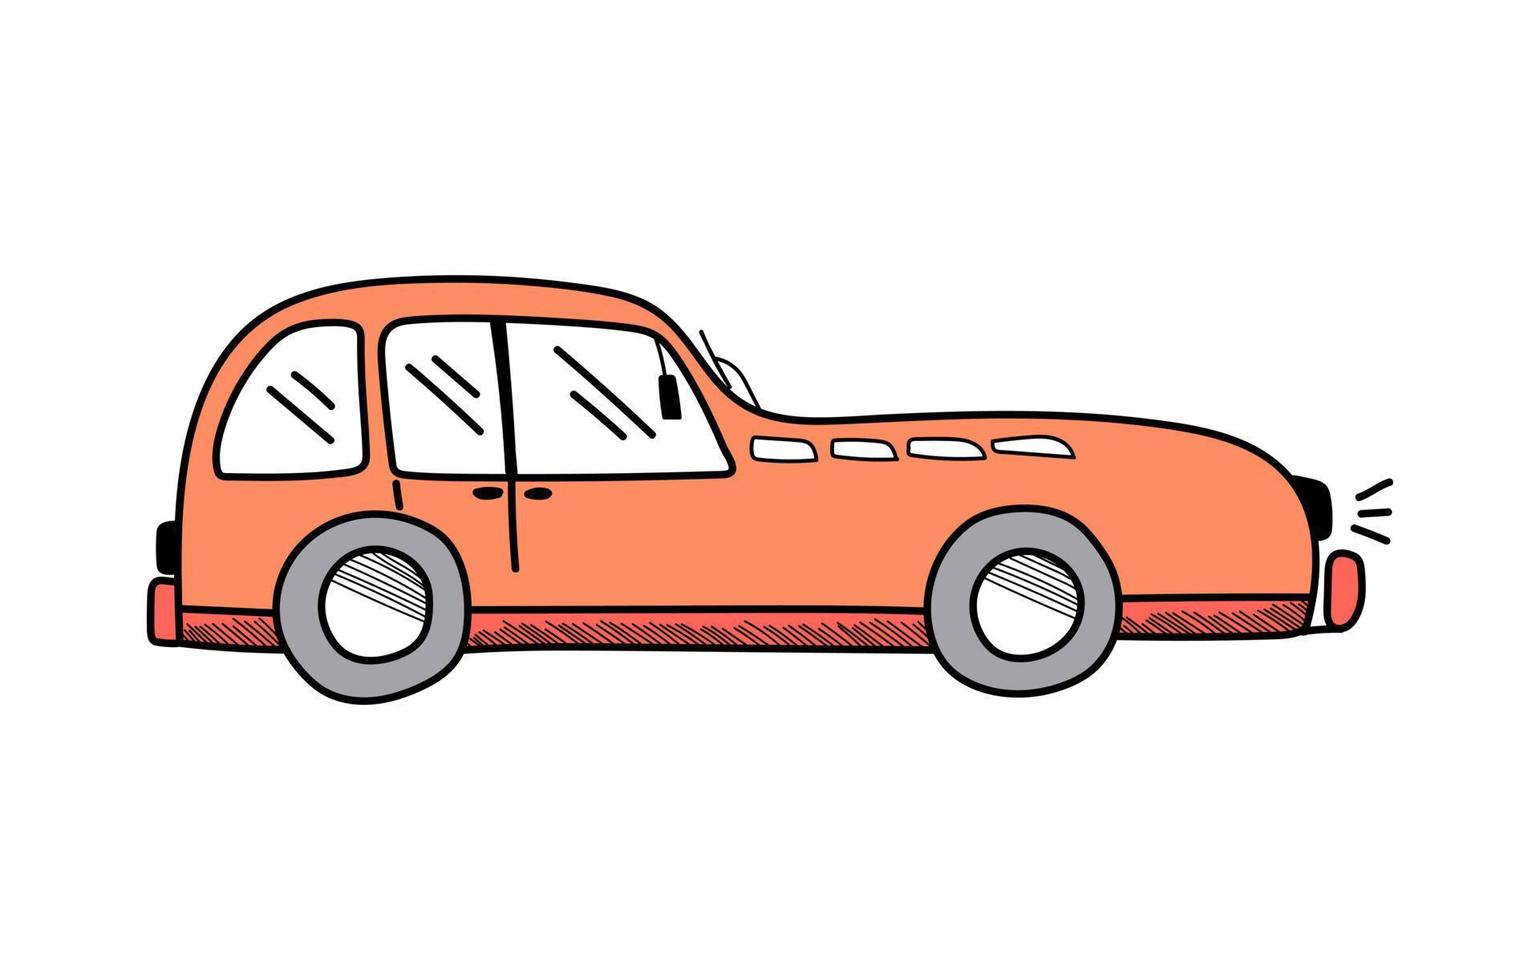 Vektor süßes orangefarbenes Auto im Doodle-Stil auf weißem Hintergrund, Kinderillustration für Postkarten, Poster, Spielzeug.